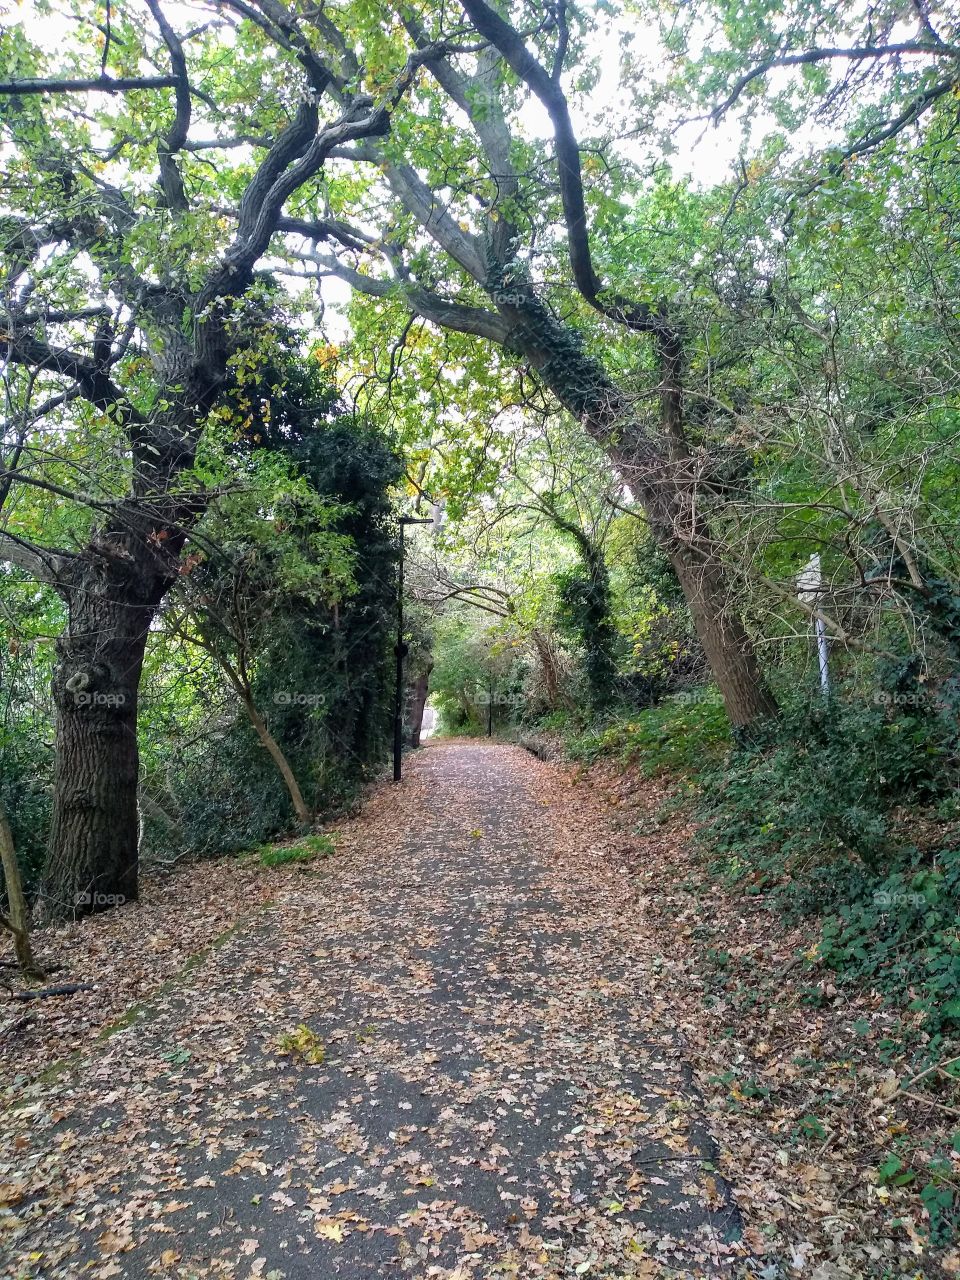 Autumn Leaves in Hanger Hill Park, London